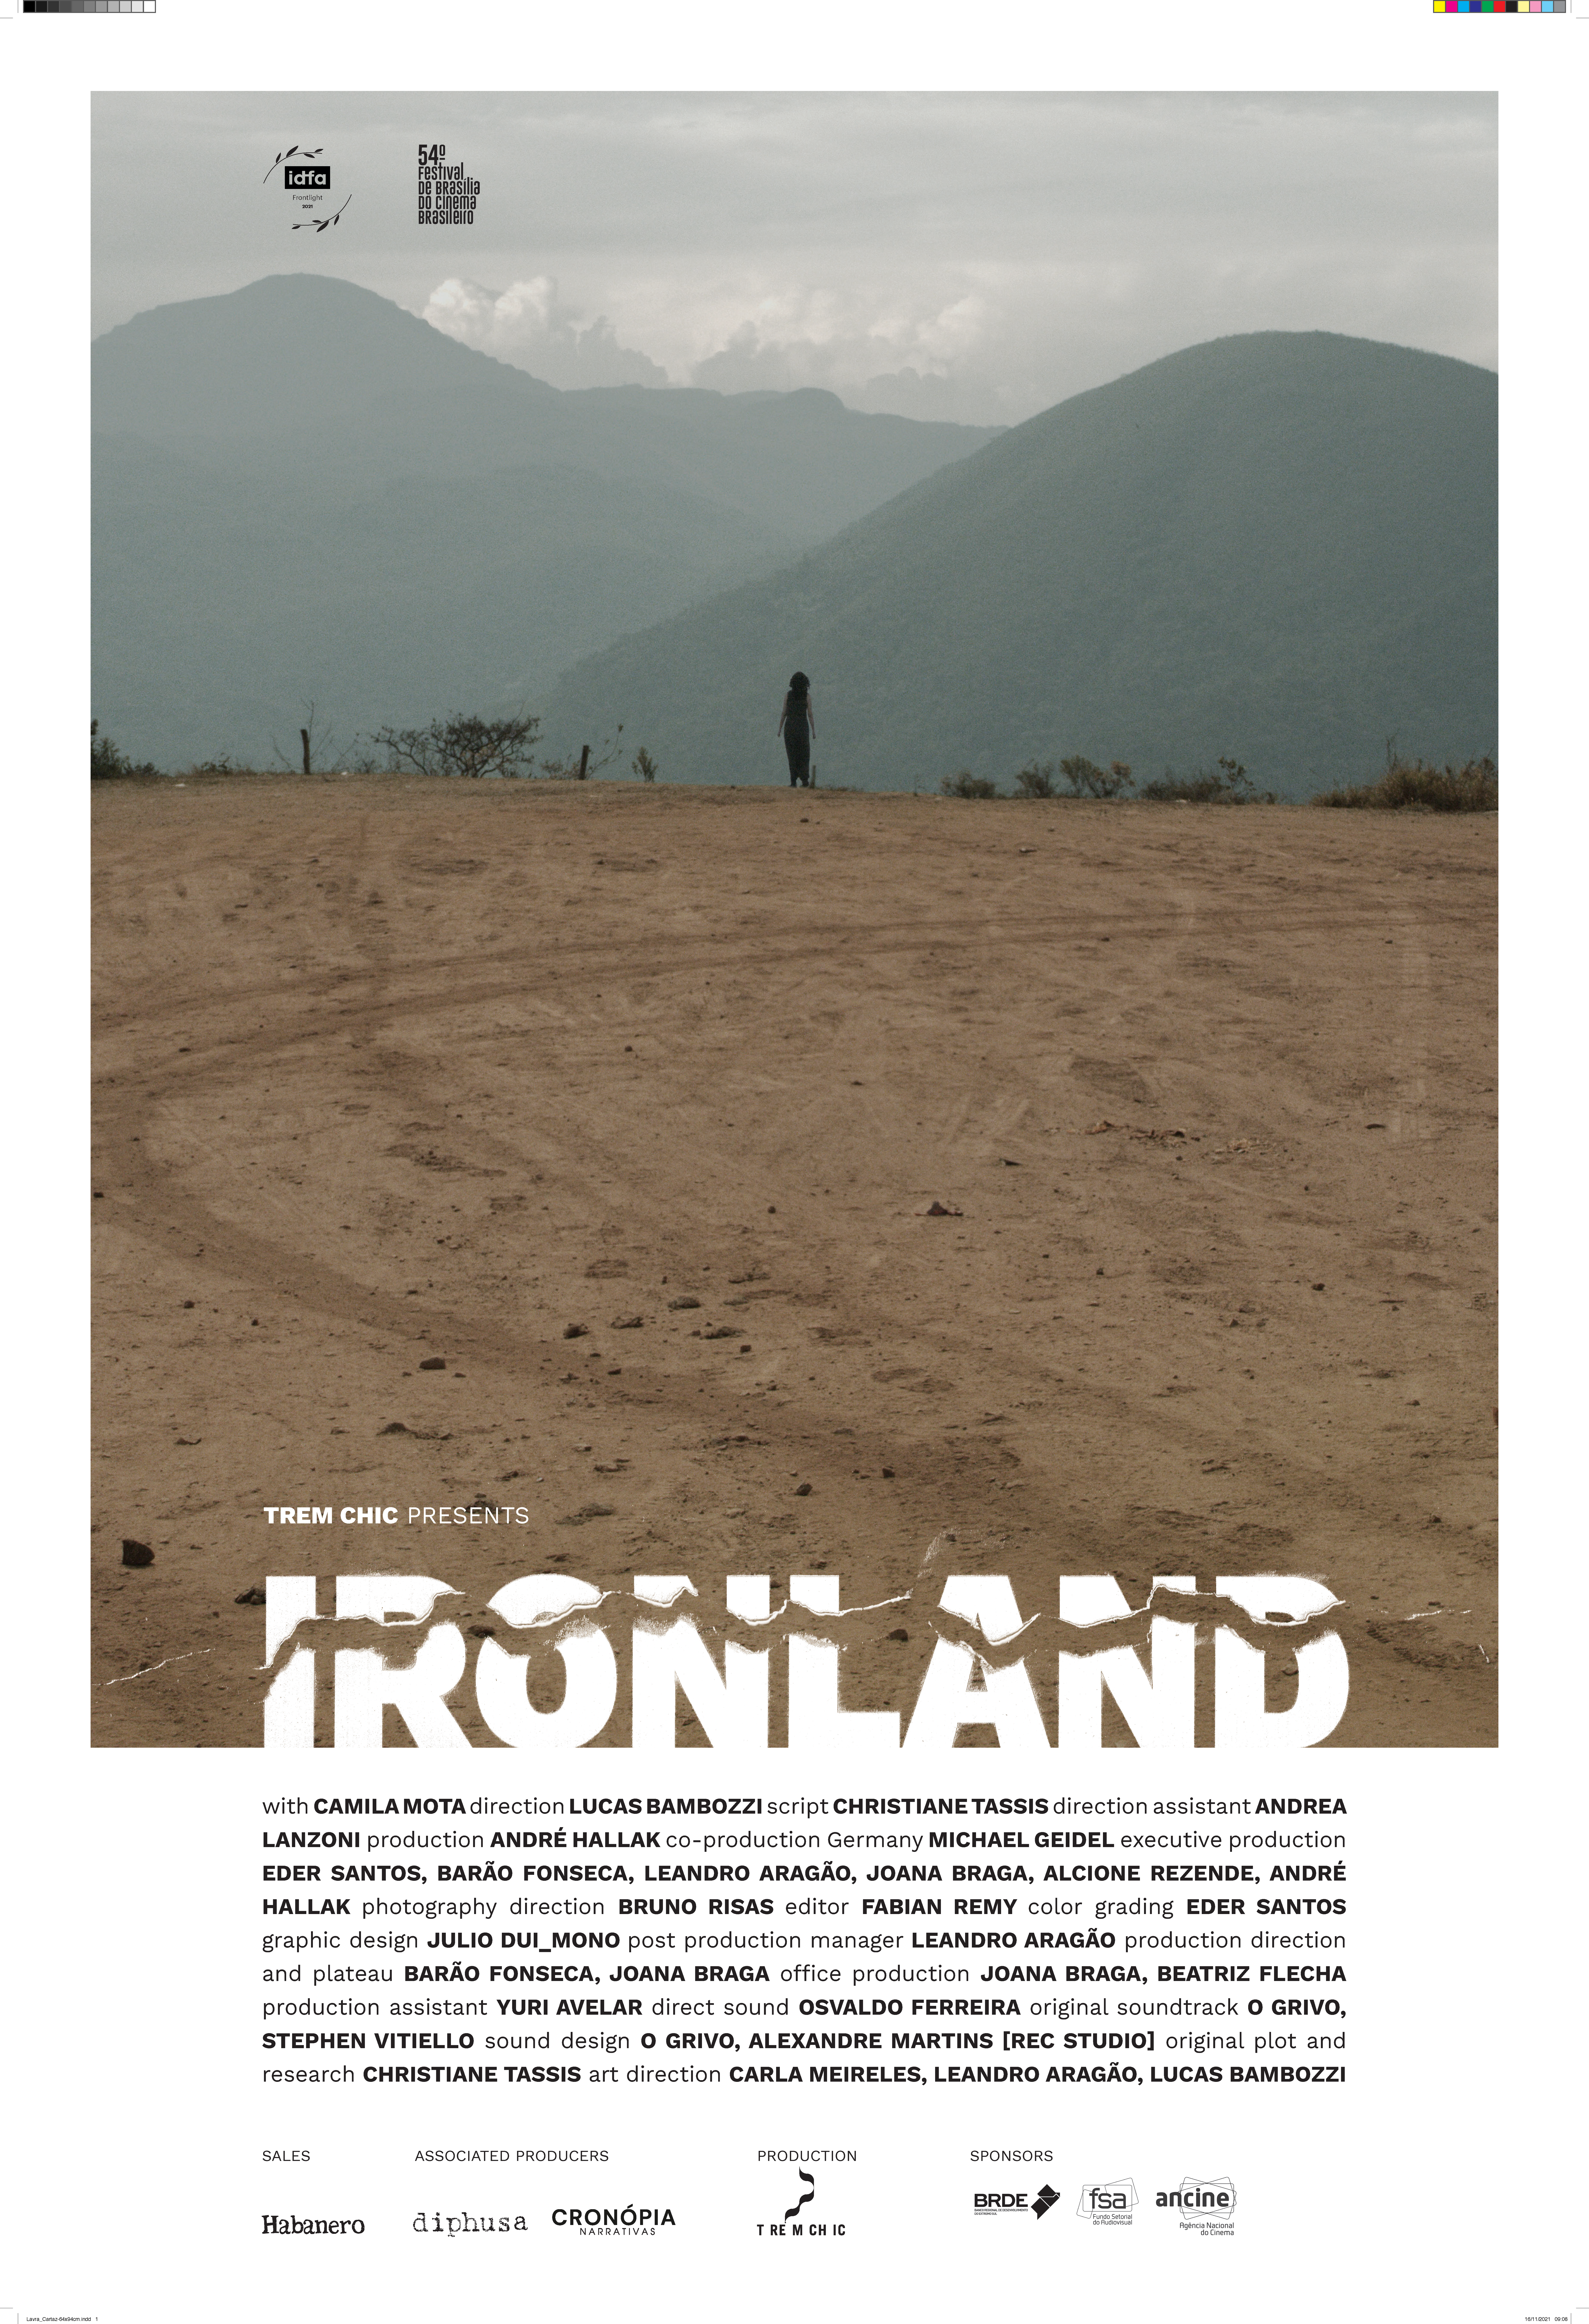 Ironland (Brazil) 2021 - Still from film POSTER